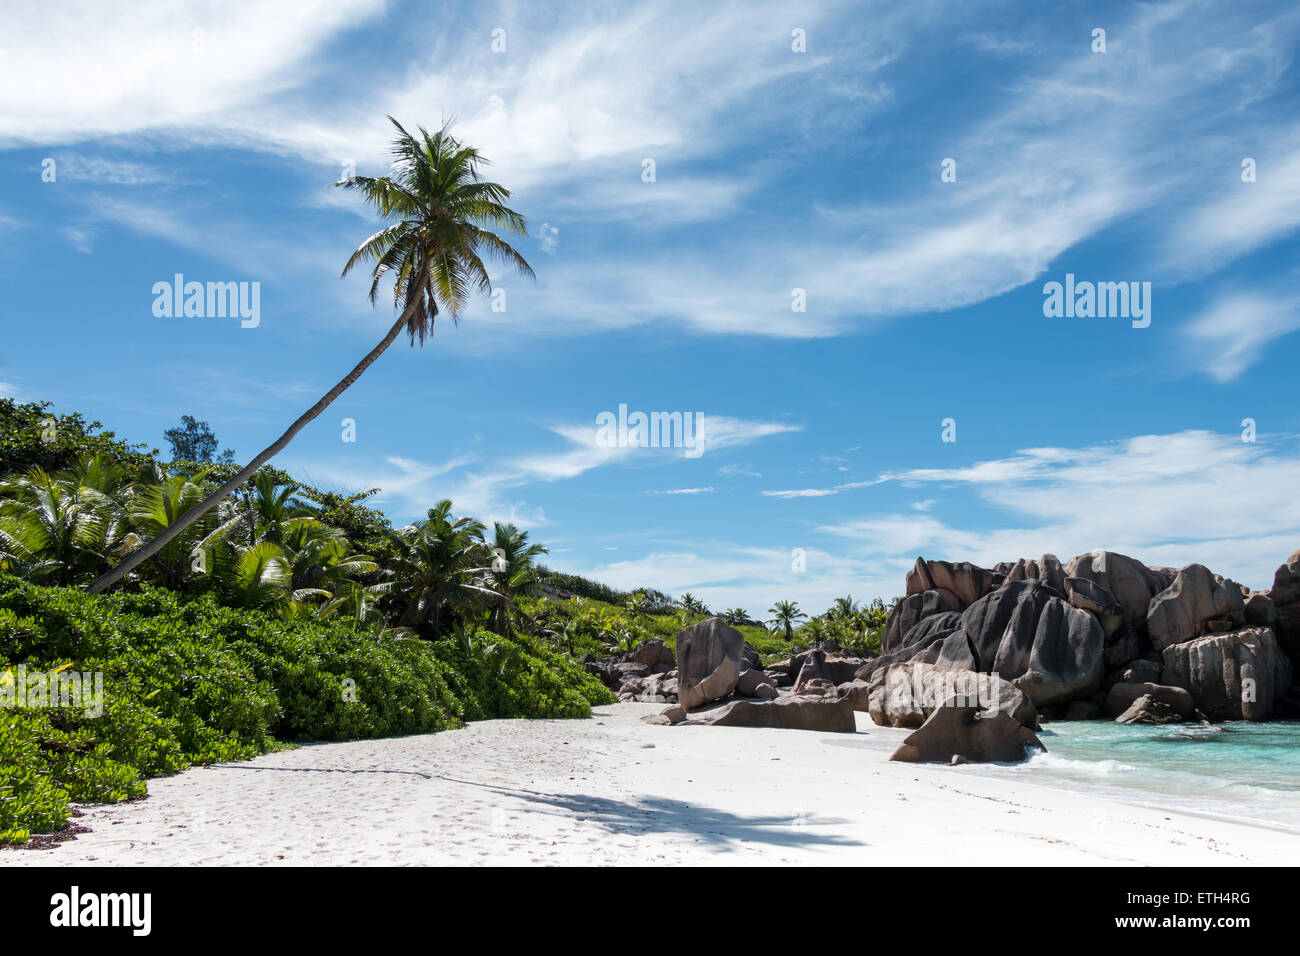 Seychelles, La Dique, Anse Cocos, picture perfect, paradise, palm on ...